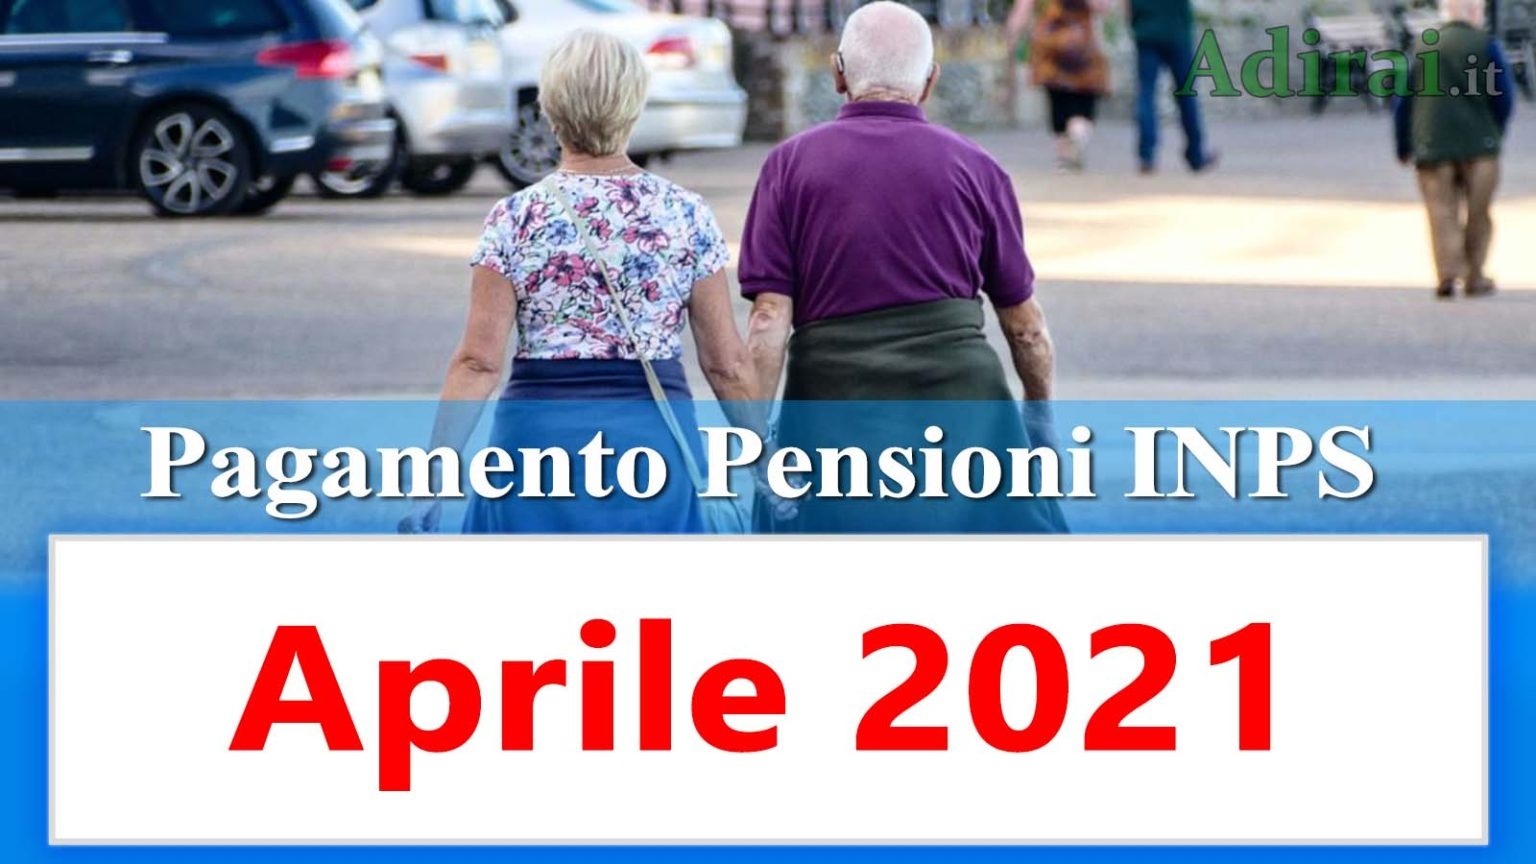 Calendario pagamento pensioni Inps aprile 2021 in anticipo